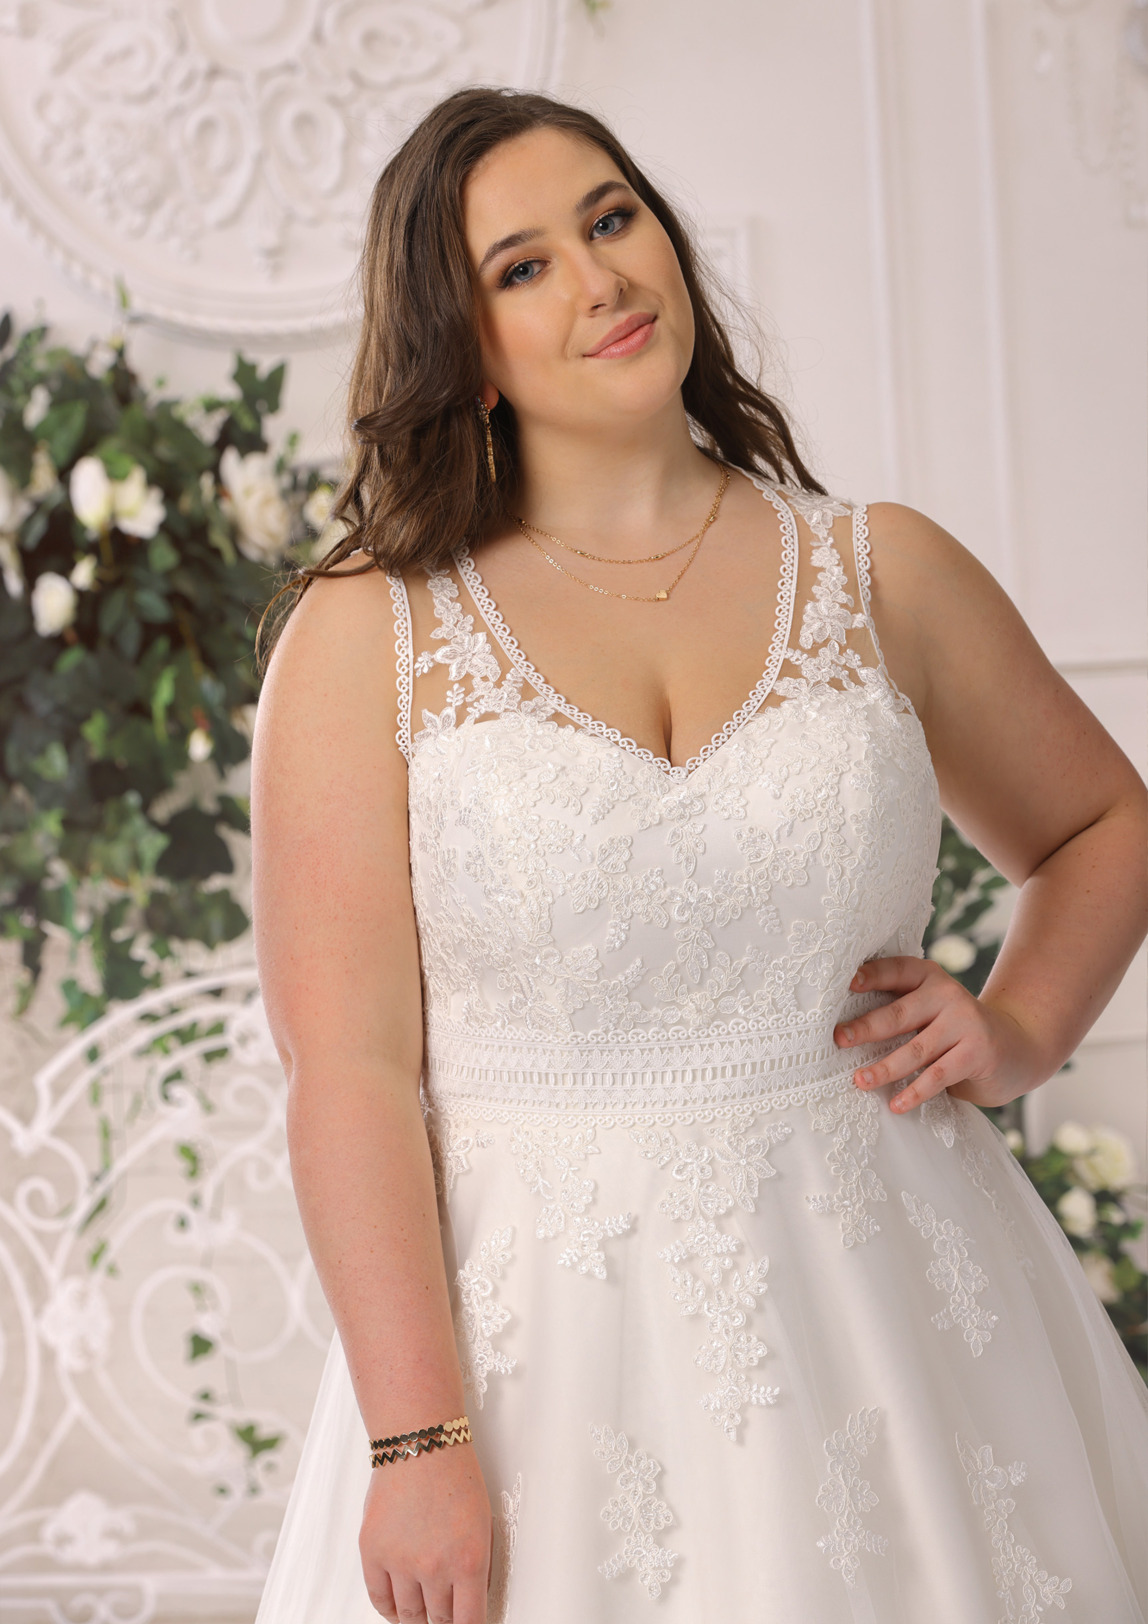 Brautkleid Hochzeitskleid in A Linie für curvy grosse Grössen von Ladybird Modell LS722012 mit V Ausschnitt und breiten Trägern Spitzen Applikationen Bild 1